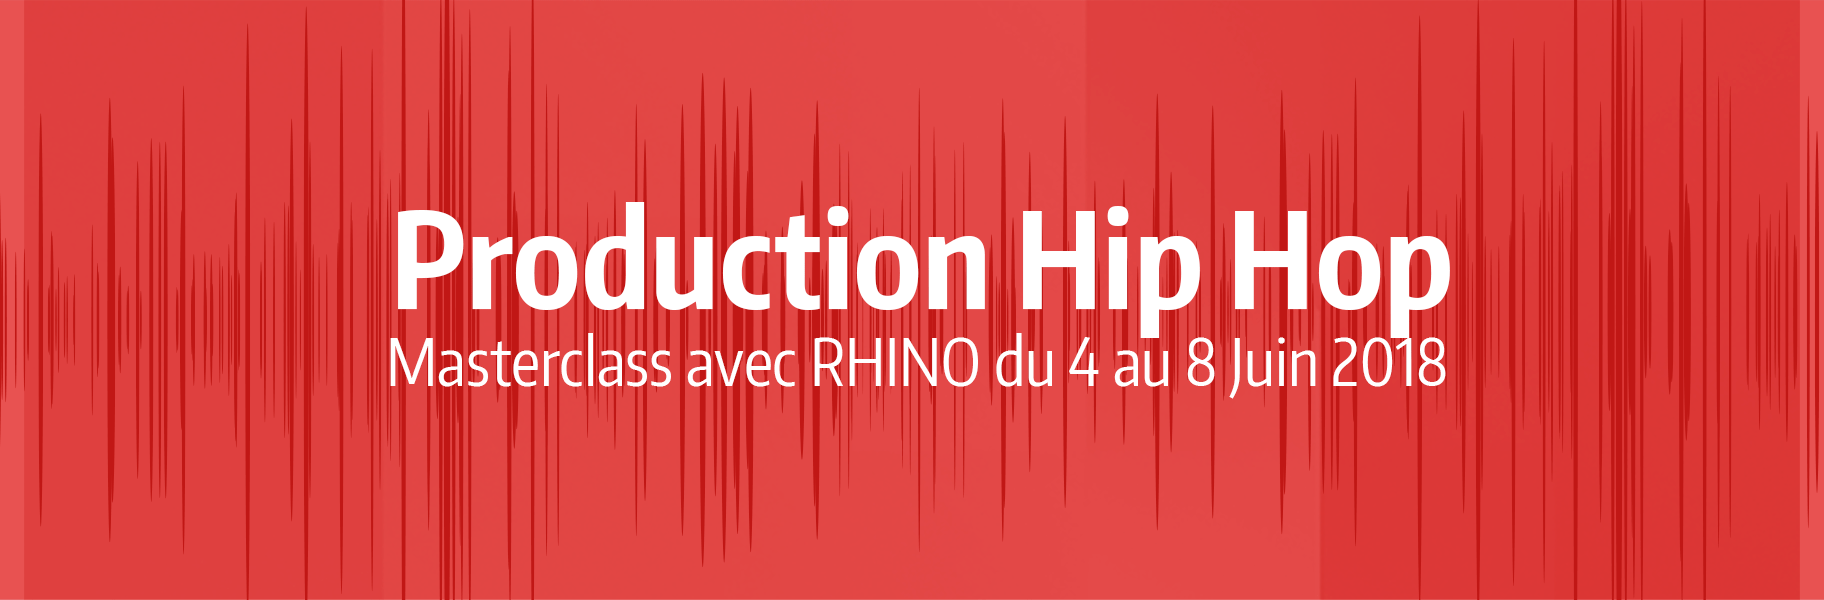 Production Hip Hop - Masterclass avec Rhino du 4 au 8 Juin 2018